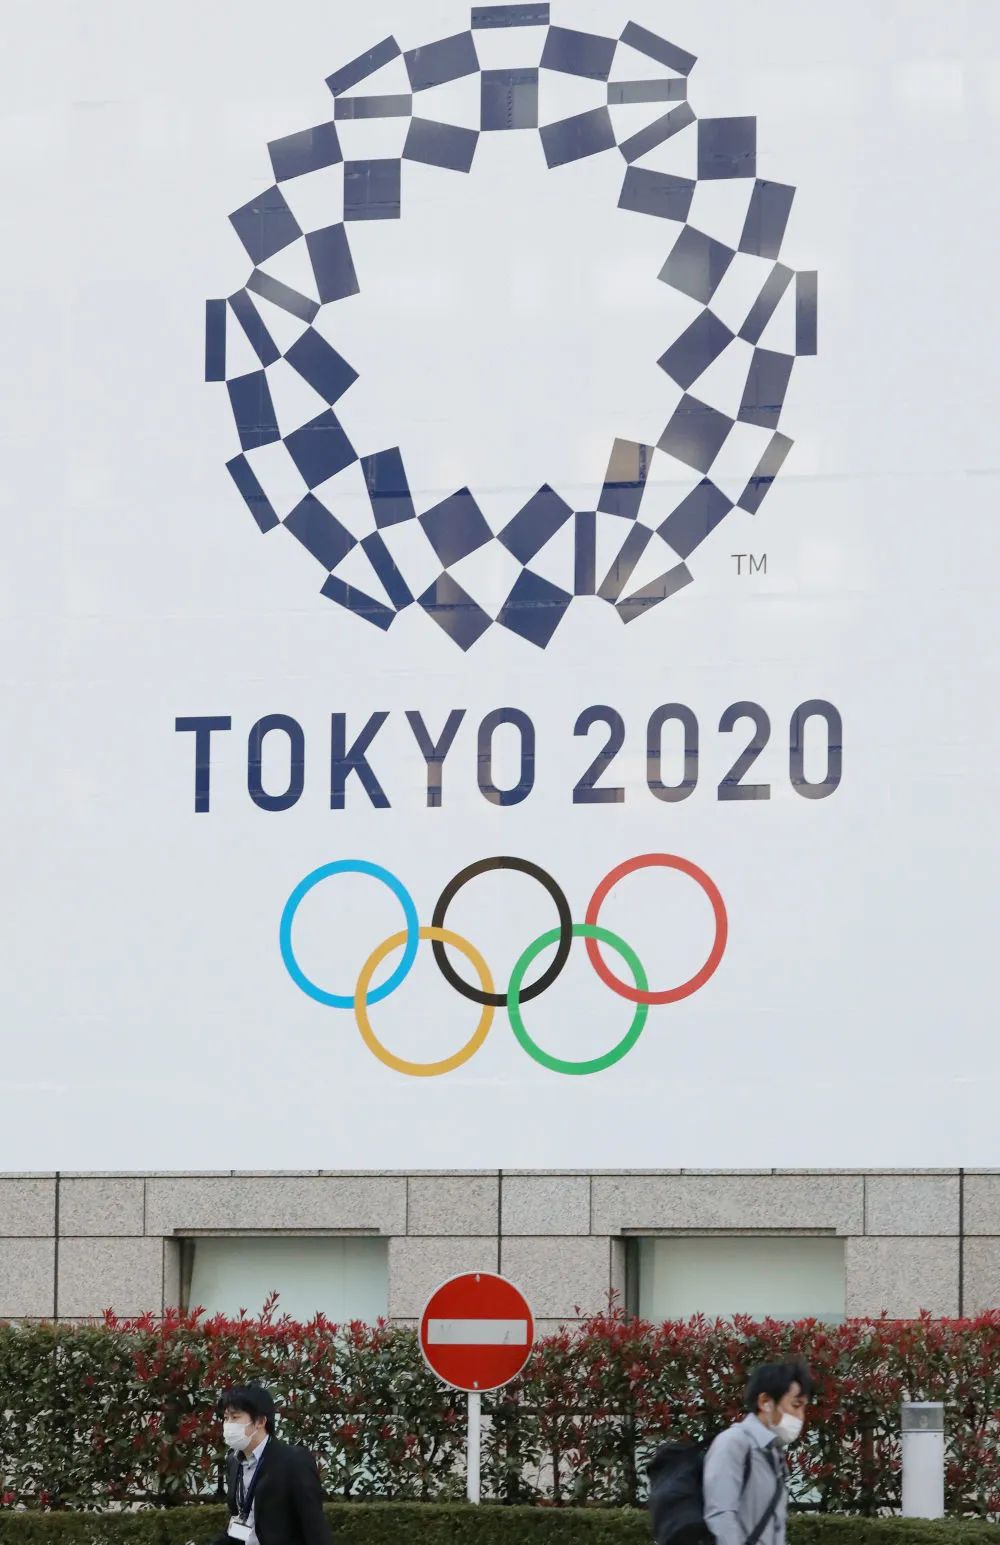 美国奥委会高管担心东京奥运会推迟之后仍被取消